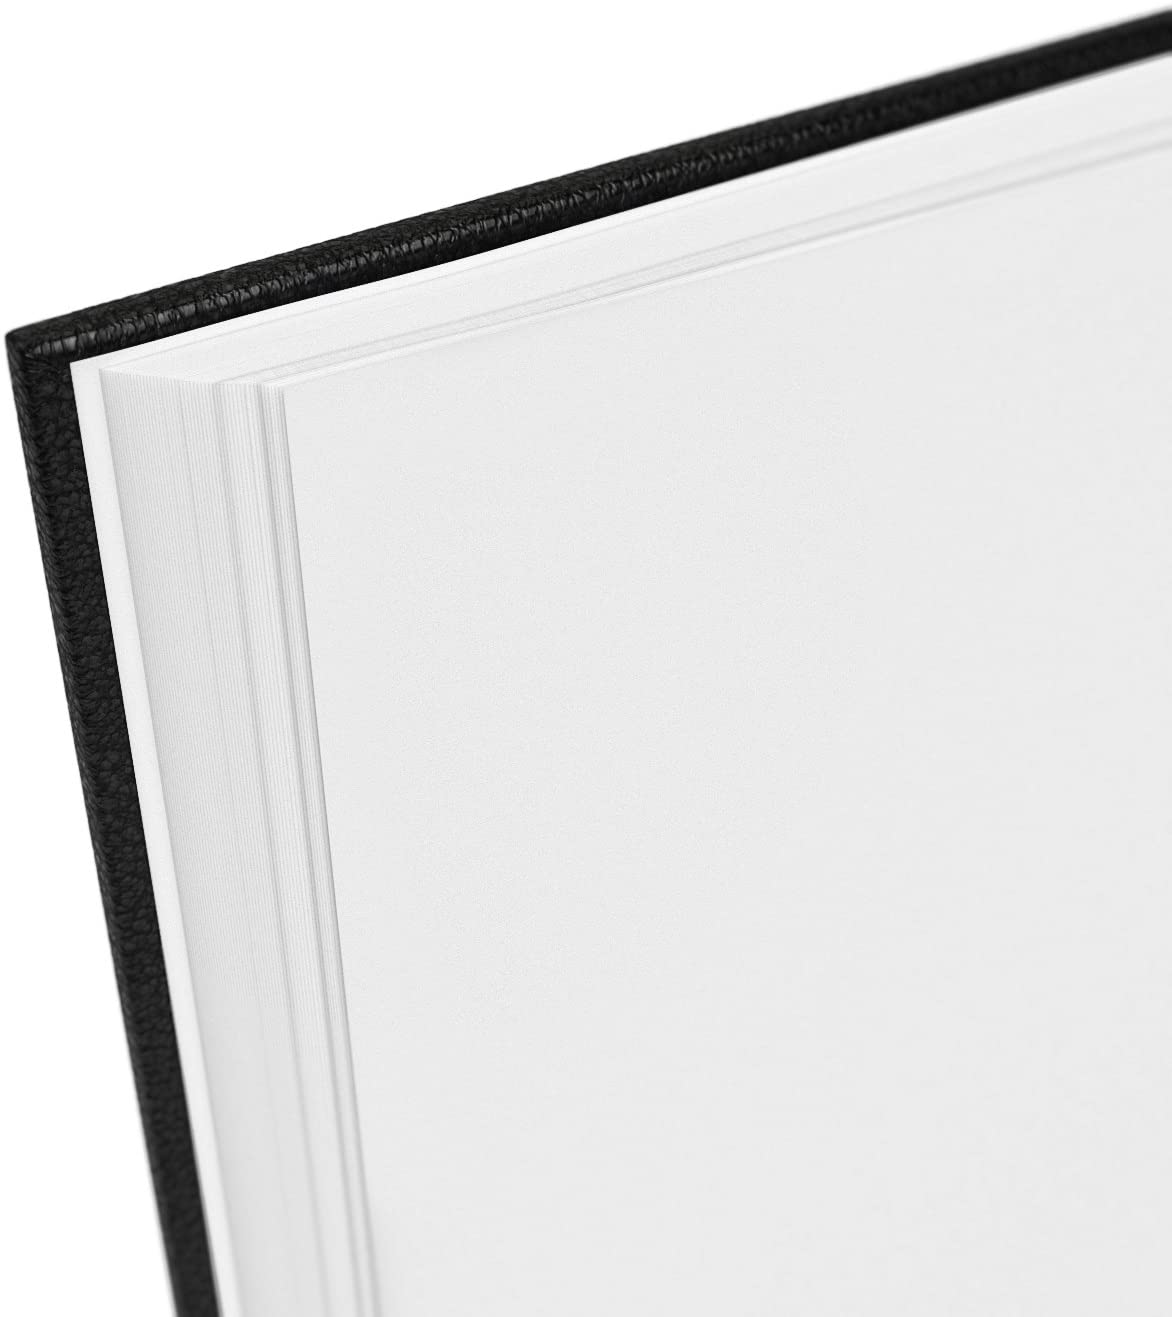 Black Hardbound Sketch Book 8.5X11 Brand New Blank White Heavy Artist Paper